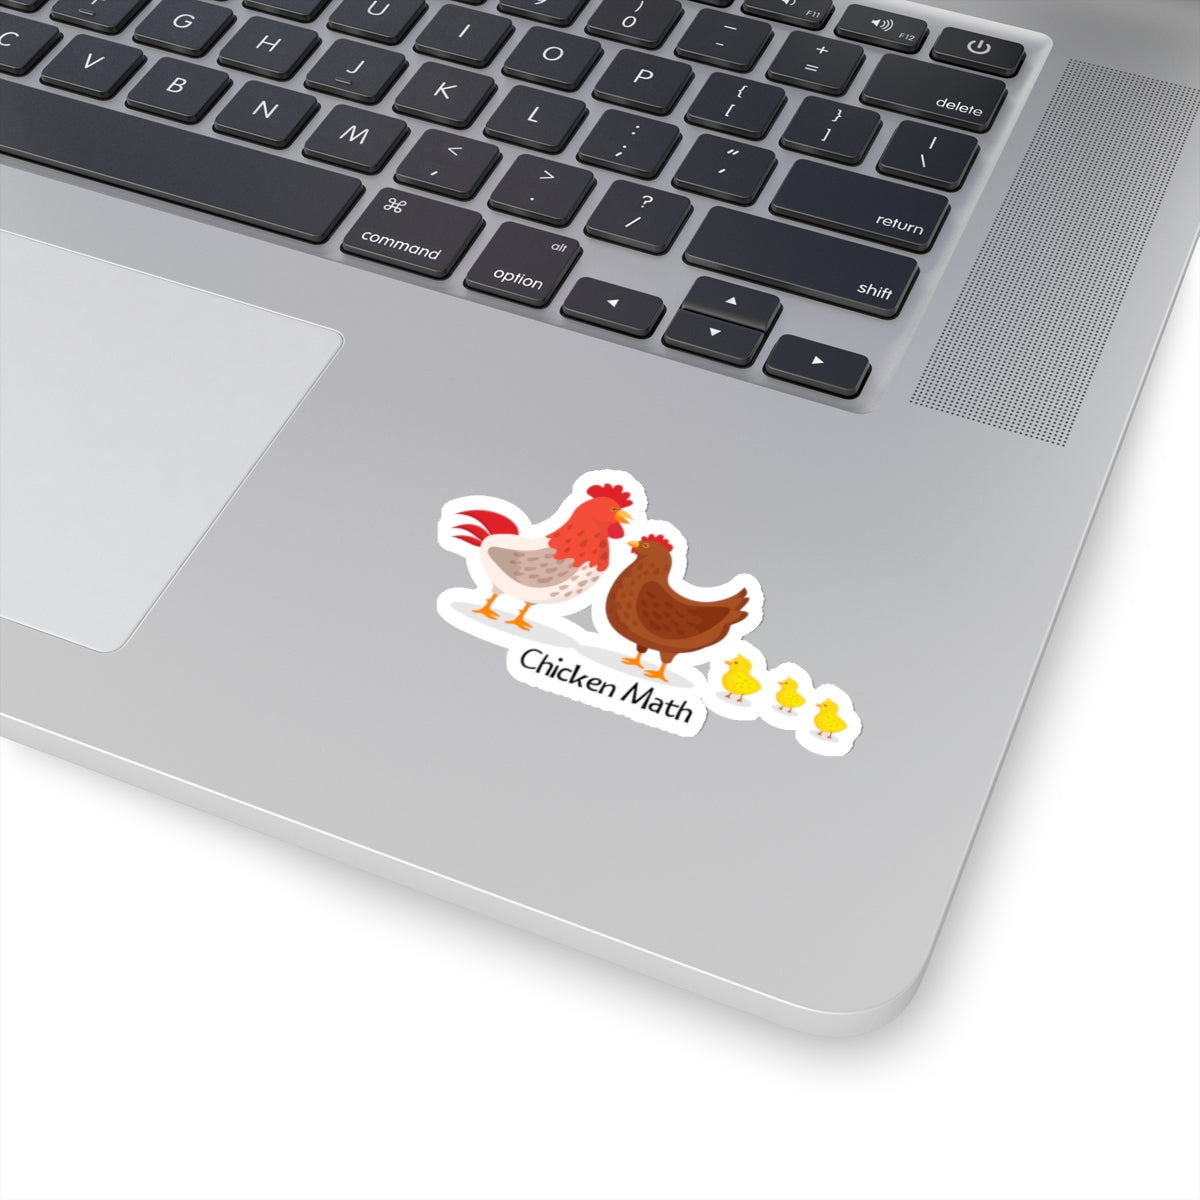 Chicken Math Sticker